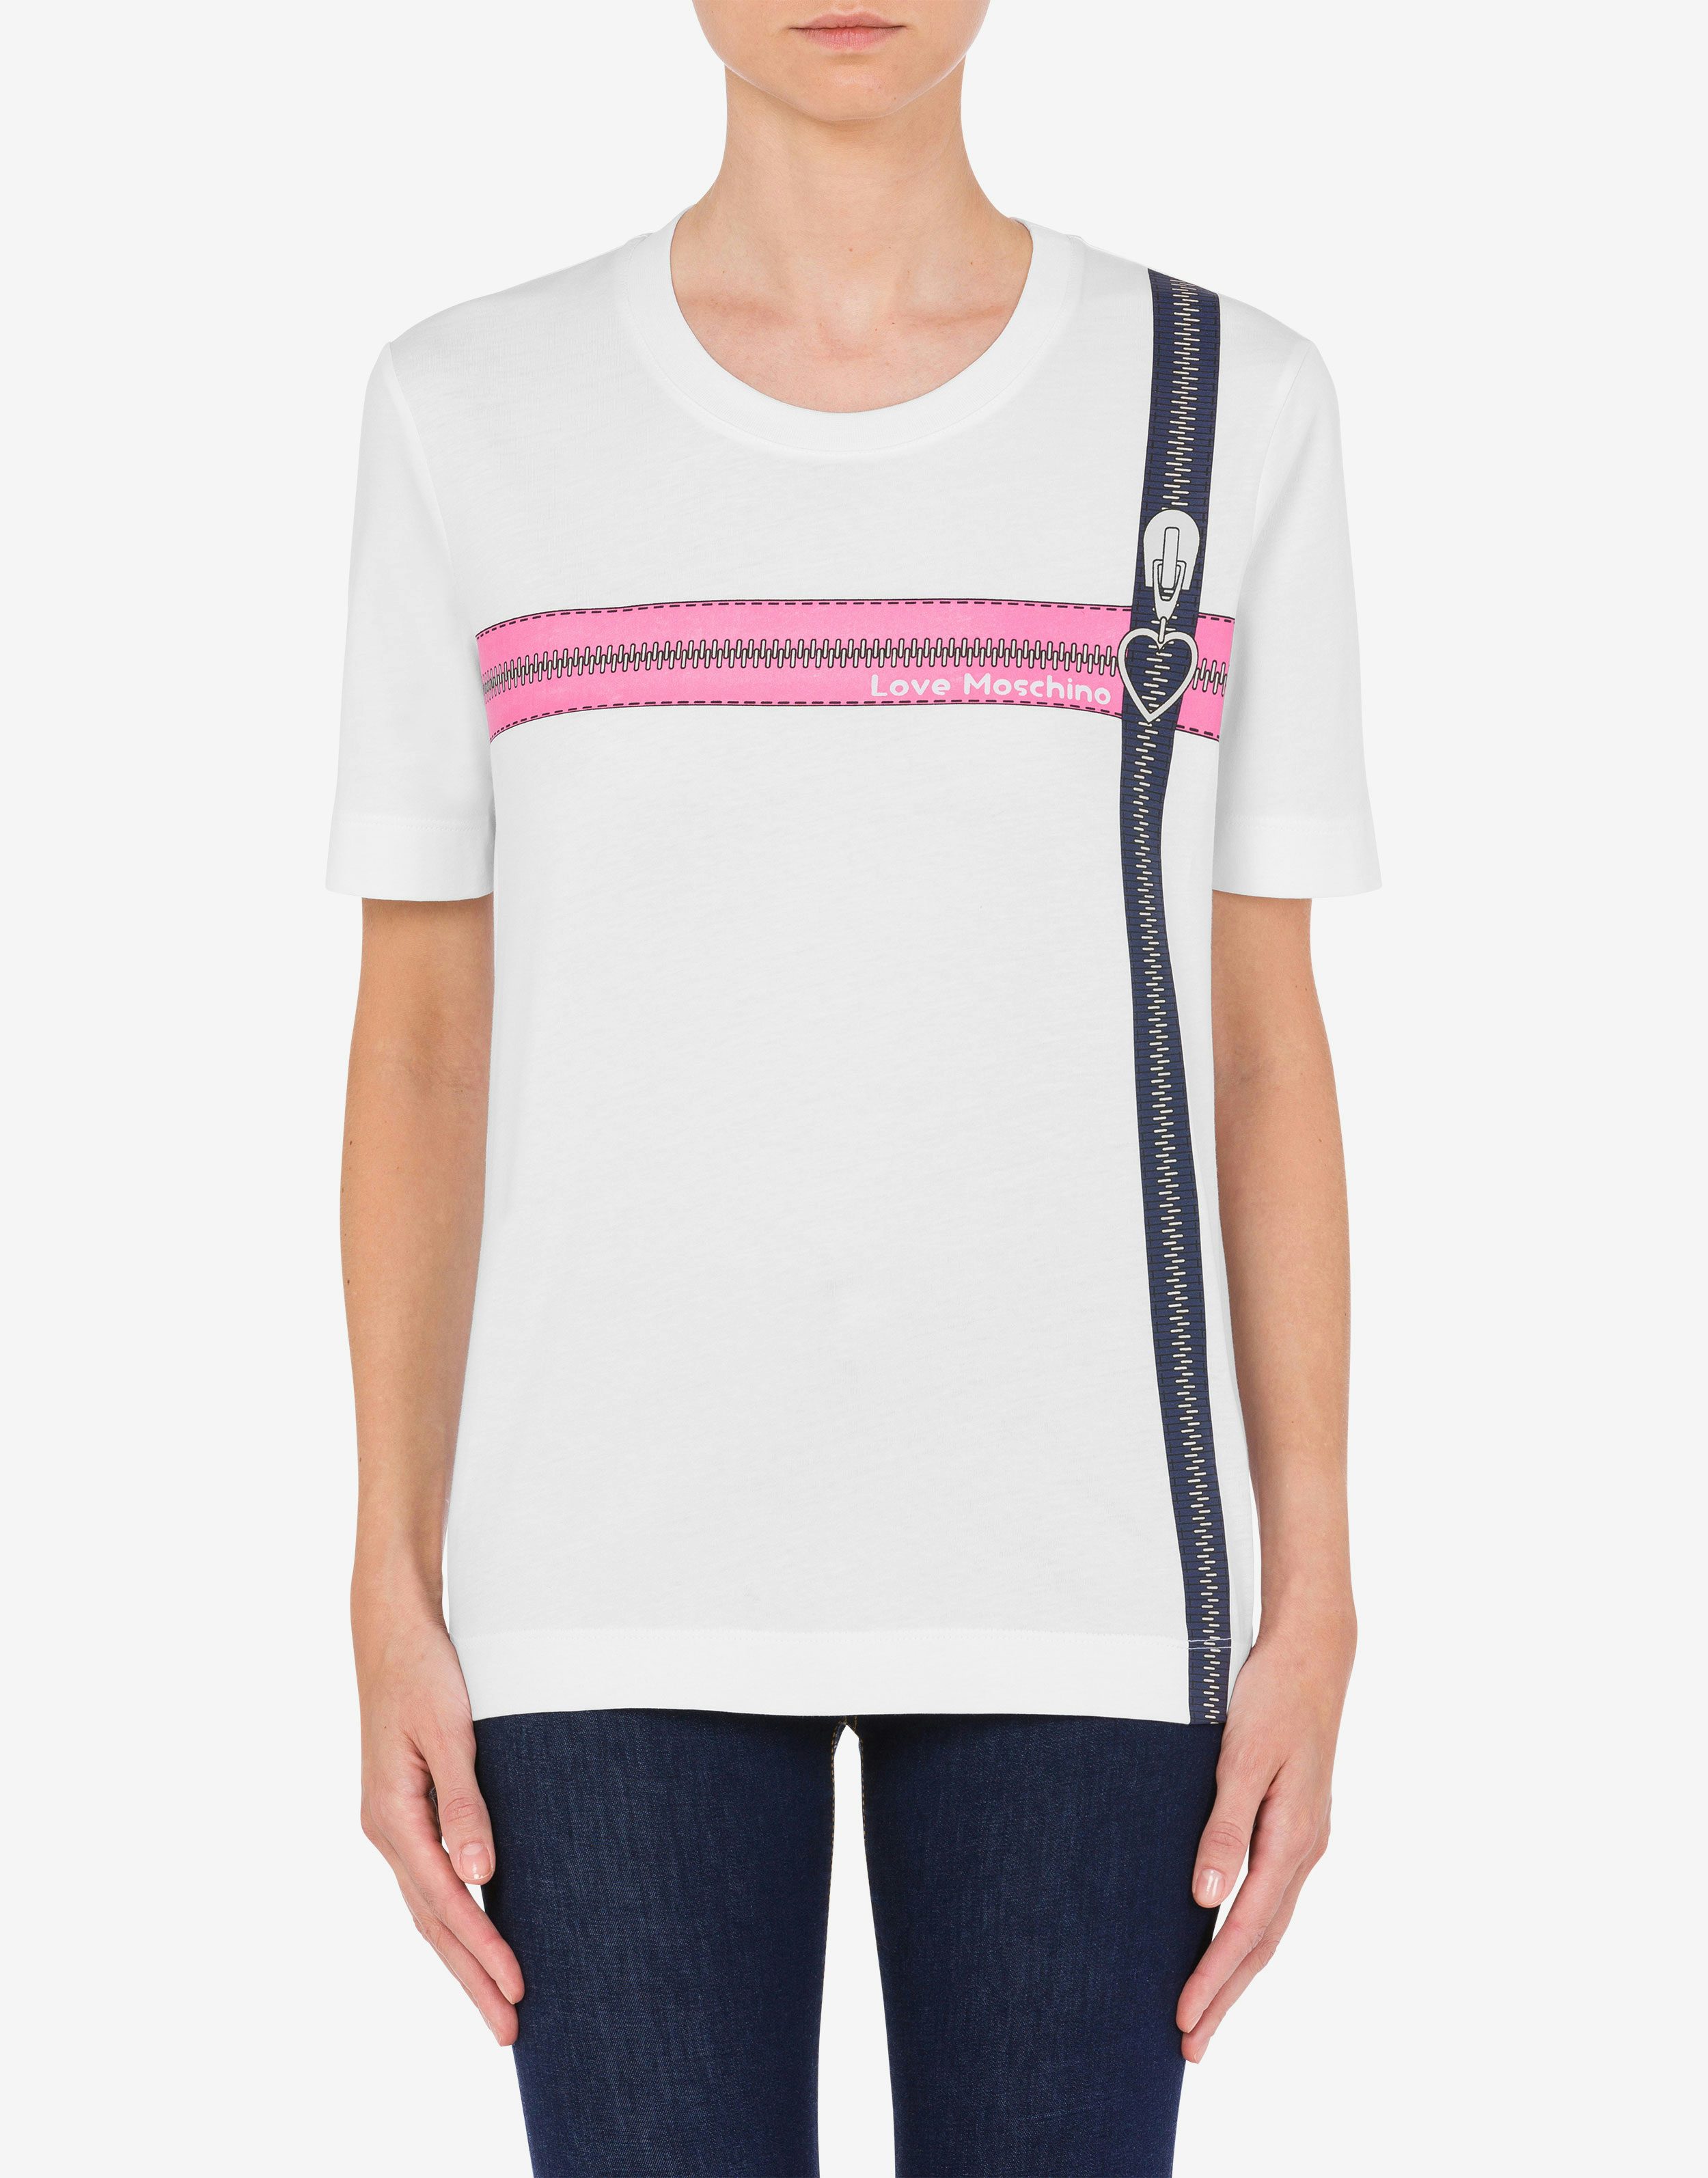 Cotton jersey Pop Art Zippers T-shirt 0